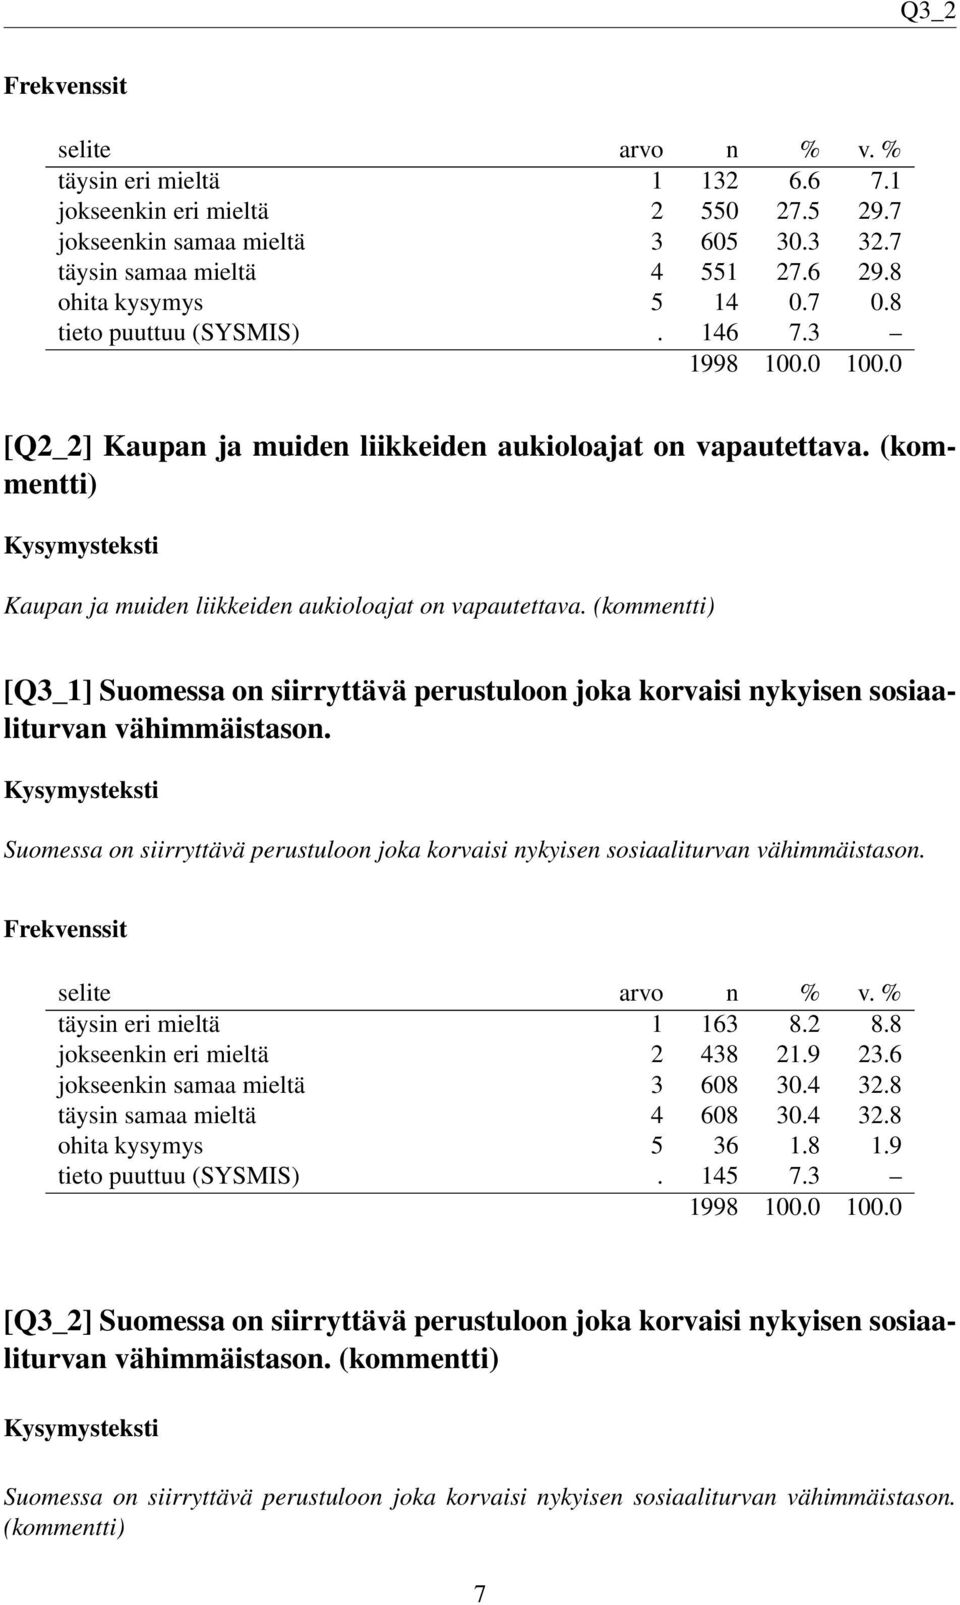 (kommentti) [Q3_1] Suomessa on siirryttävä perustuloon joka korvaisi nykyisen sosiaaliturvan vähimmäistason. Suomessa on siirryttävä perustuloon joka korvaisi nykyisen sosiaaliturvan vähimmäistason. täysin eri mieltä 1 163 8.